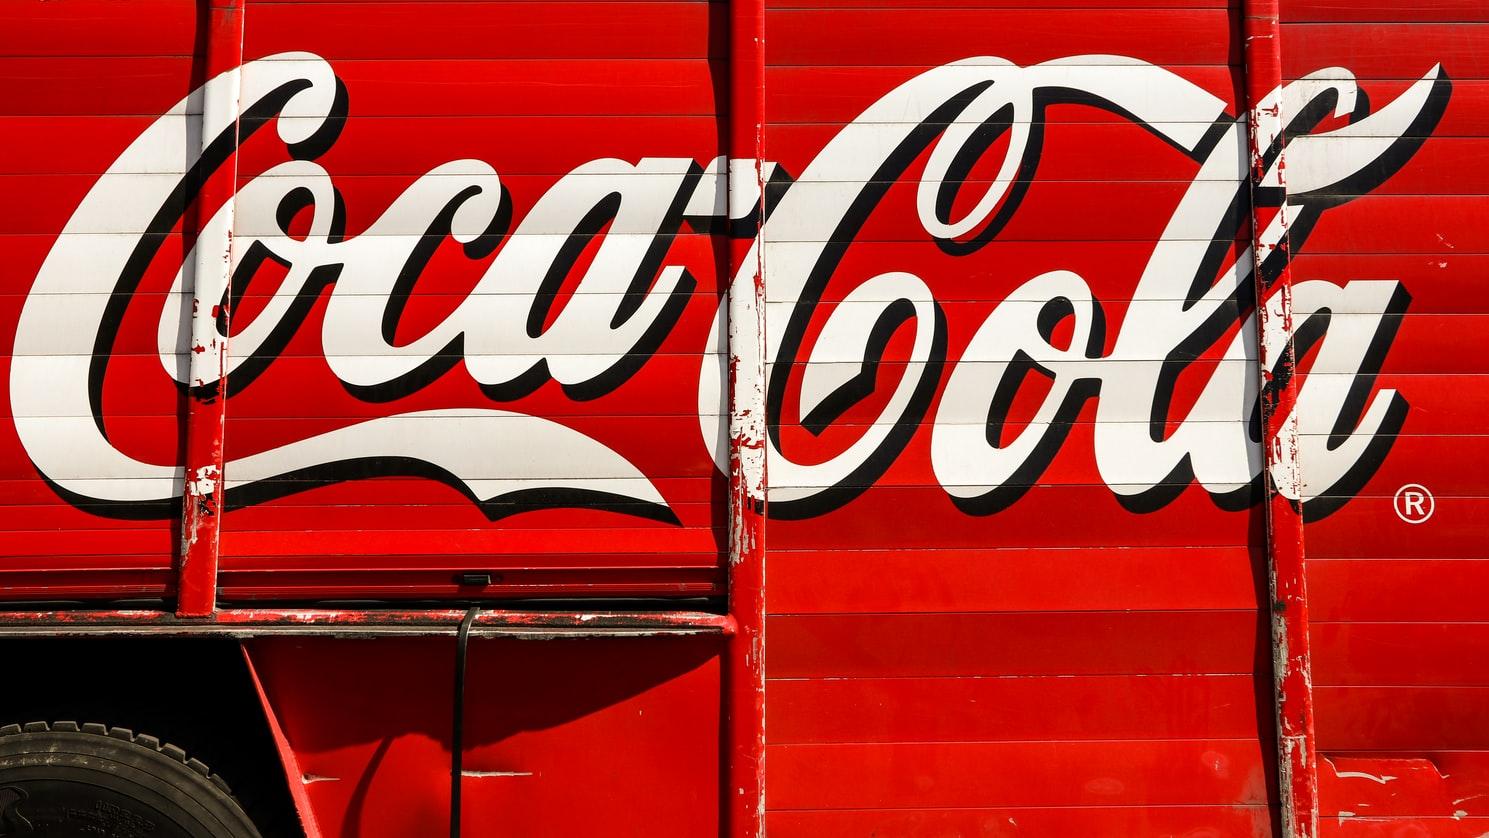 Coca Cola Revision de Ontega – Brokeropiniones.es